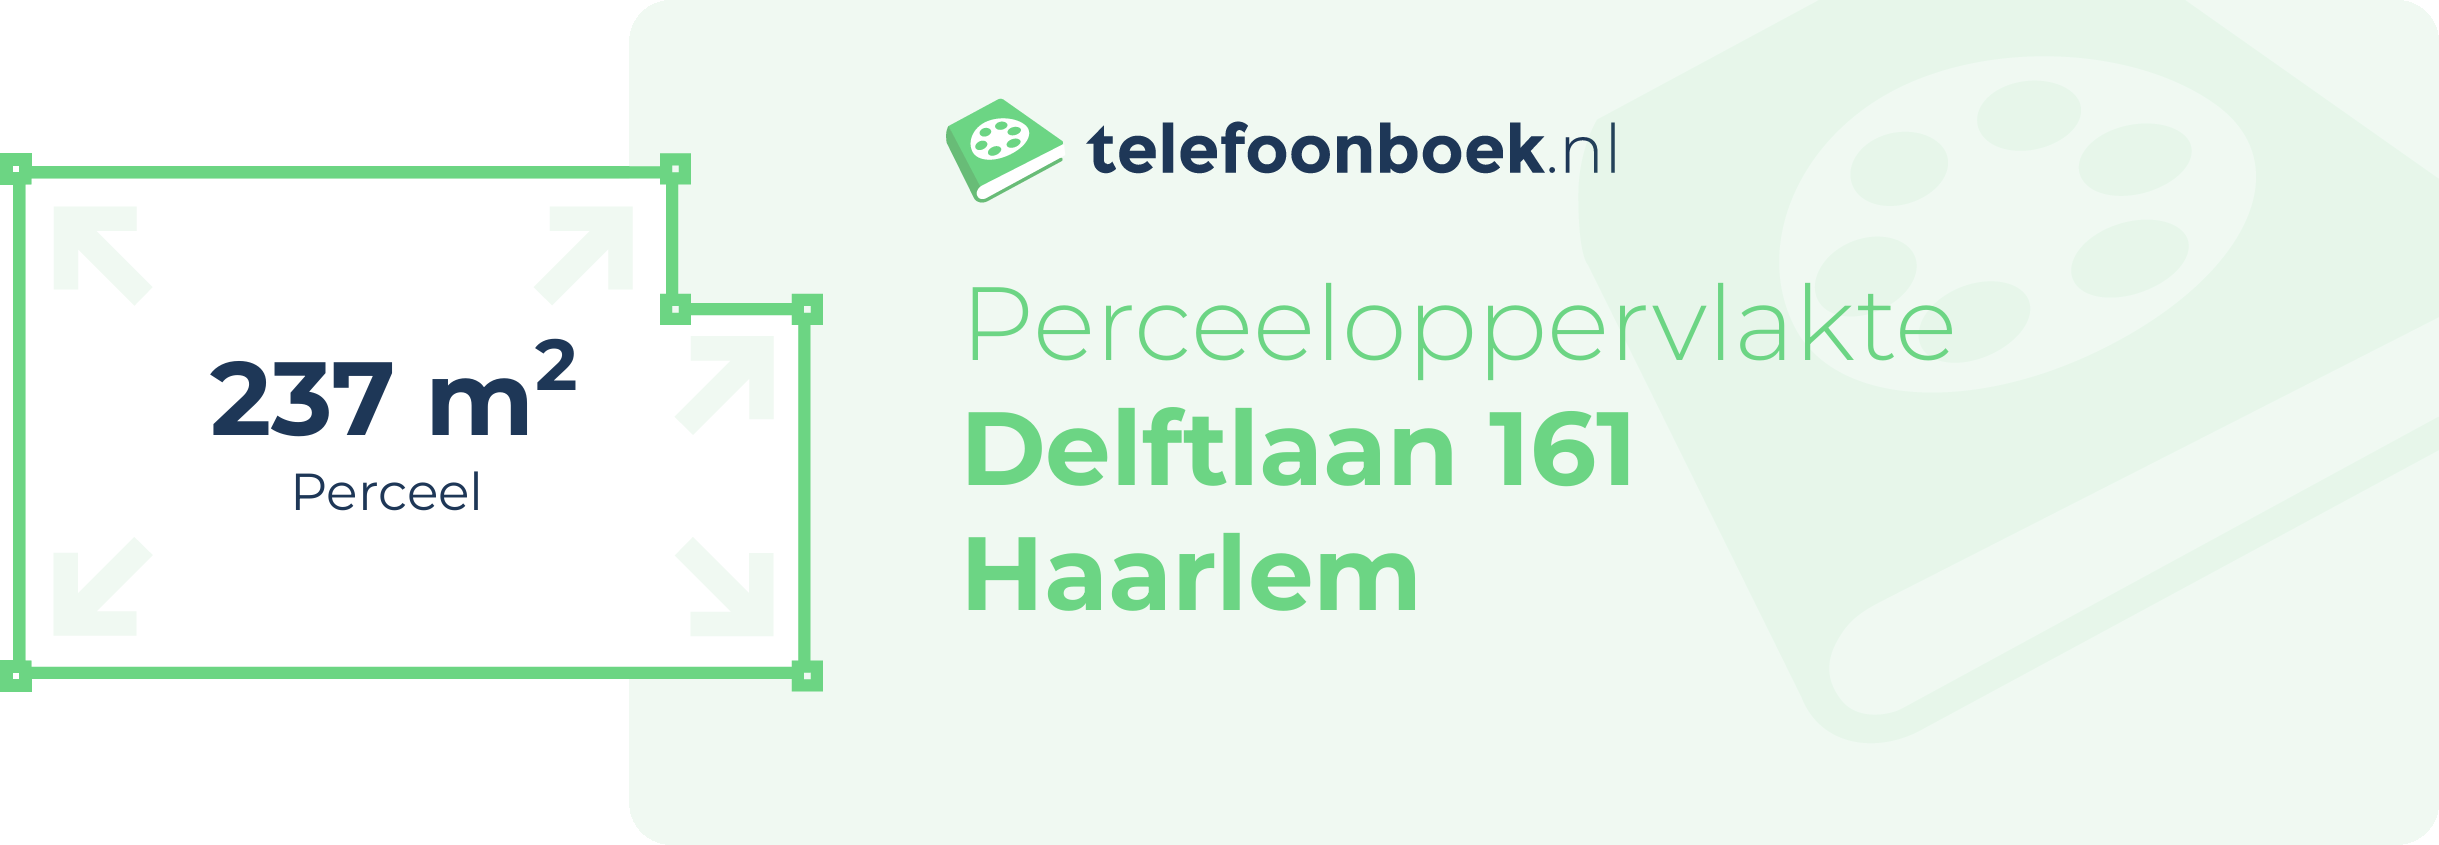 Perceeloppervlakte Delftlaan 161 Haarlem